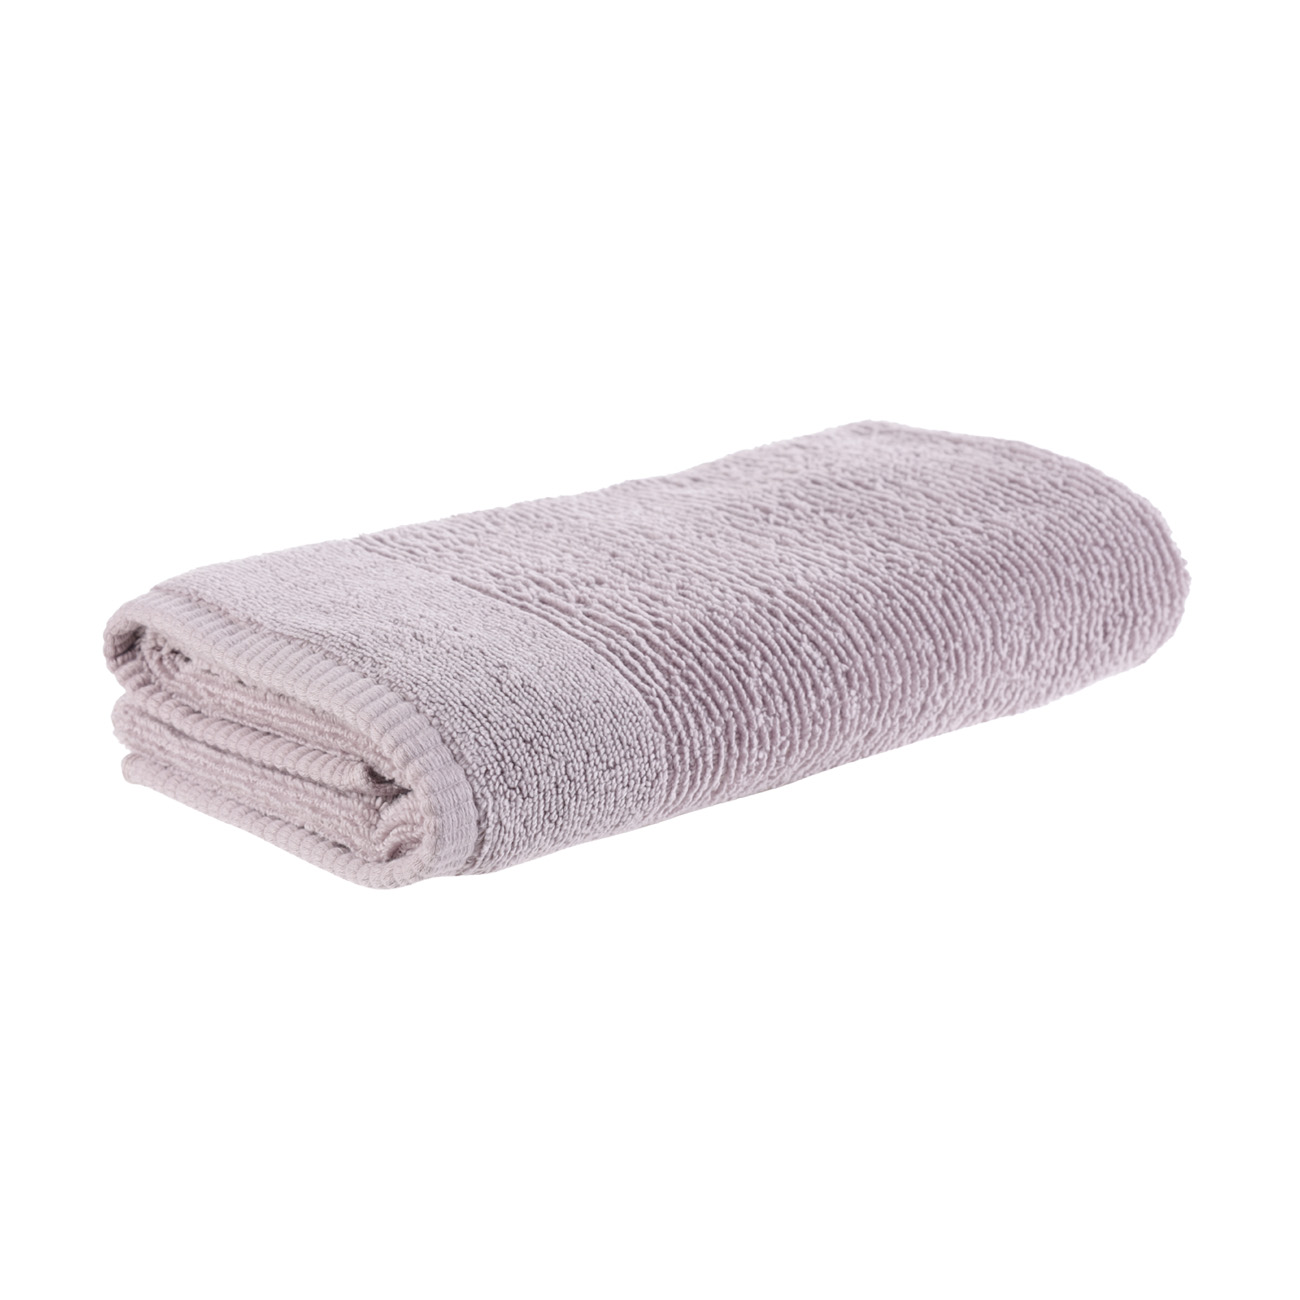 Towel, 50x90 cm, cotton, purple, Terry cotton изображение № 2